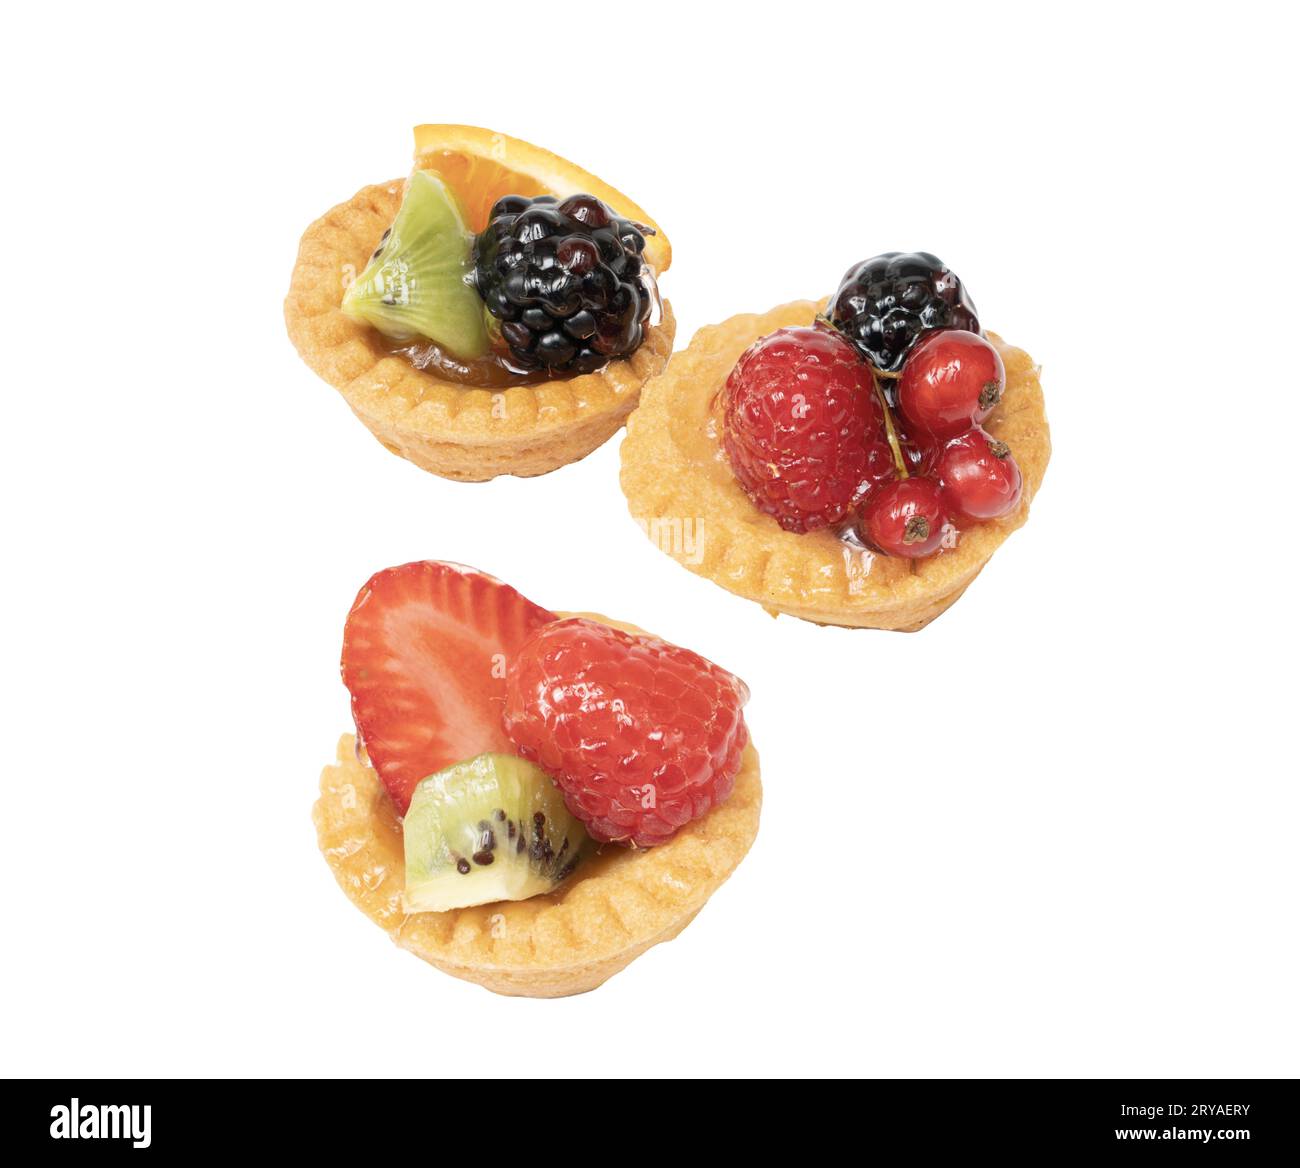 Alcuni round dolci con frutta mista su una superficie bianca Foto Stock